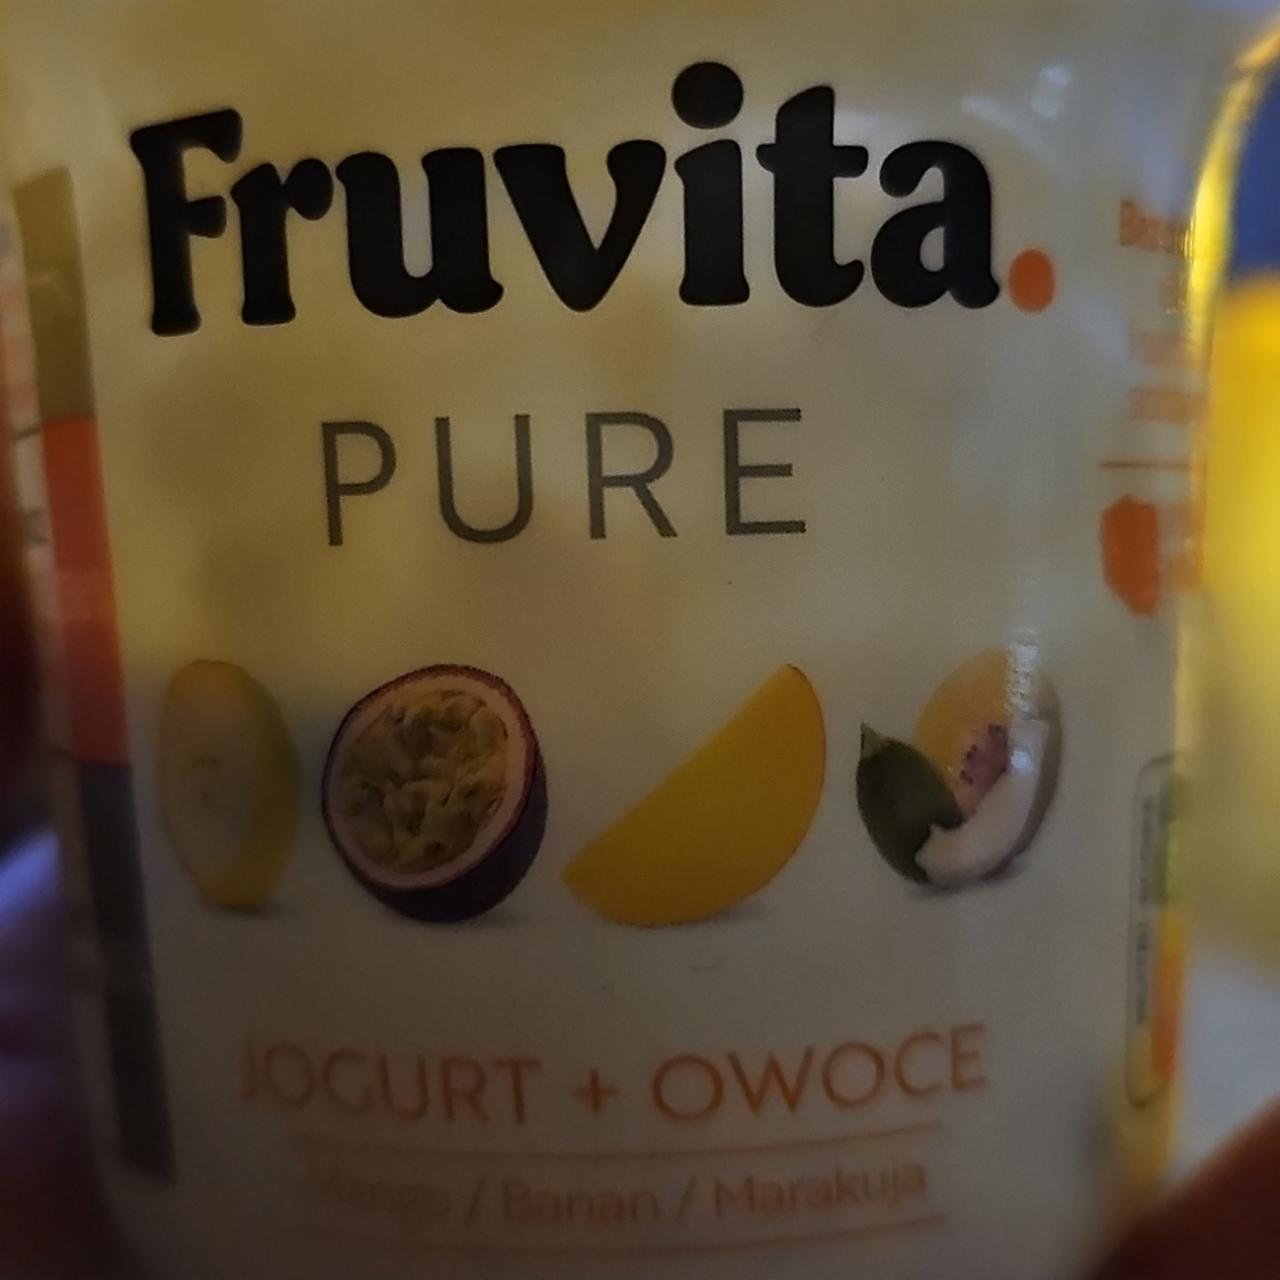 Zdjęcia - Pure jogurt z owocami Fruvita